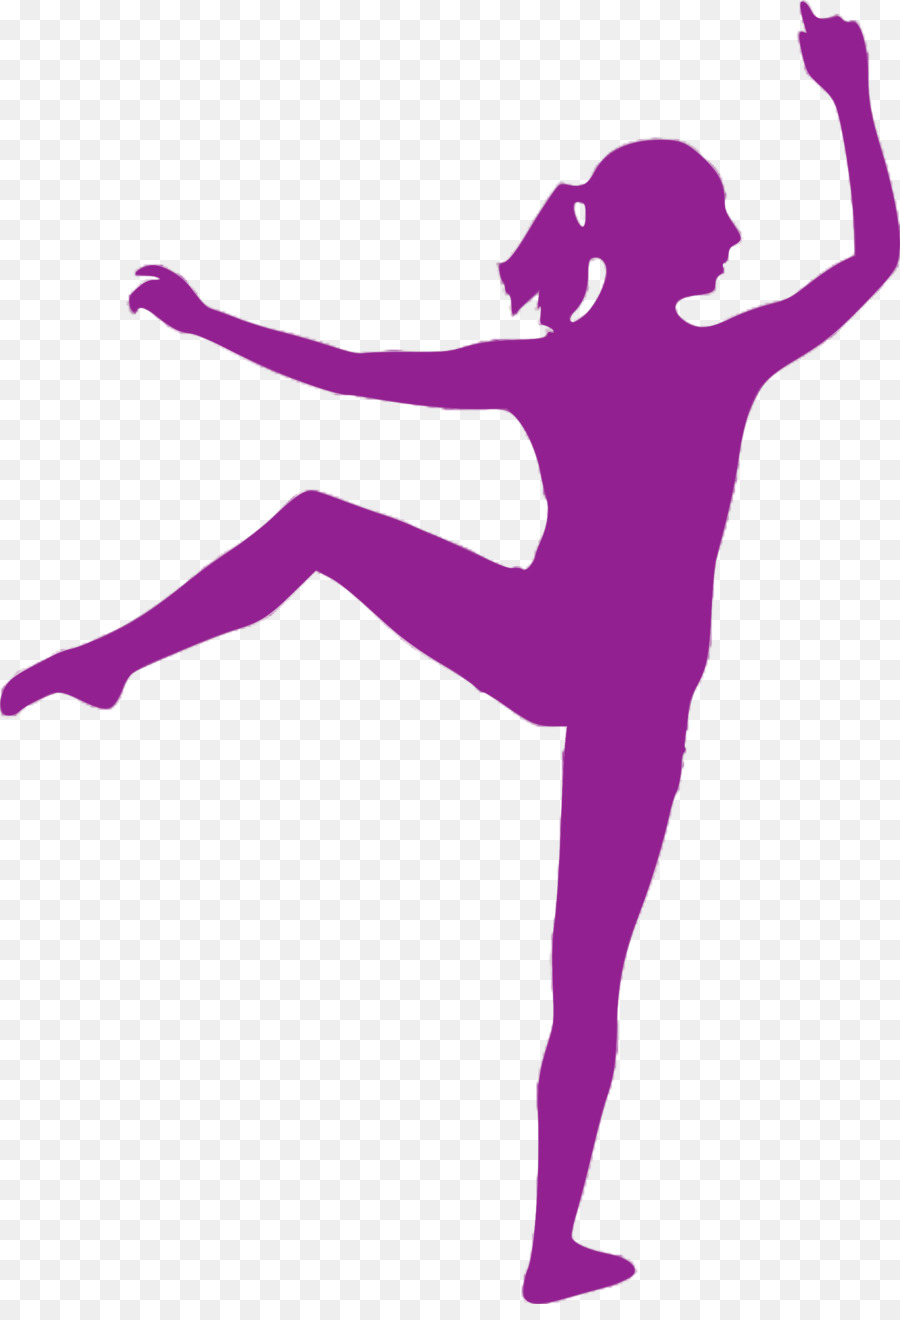 Ballet Dancer Ballet Dancer Ponytail - Silhouette png download - 1657*2400 - Free Transparent Dance png Download.